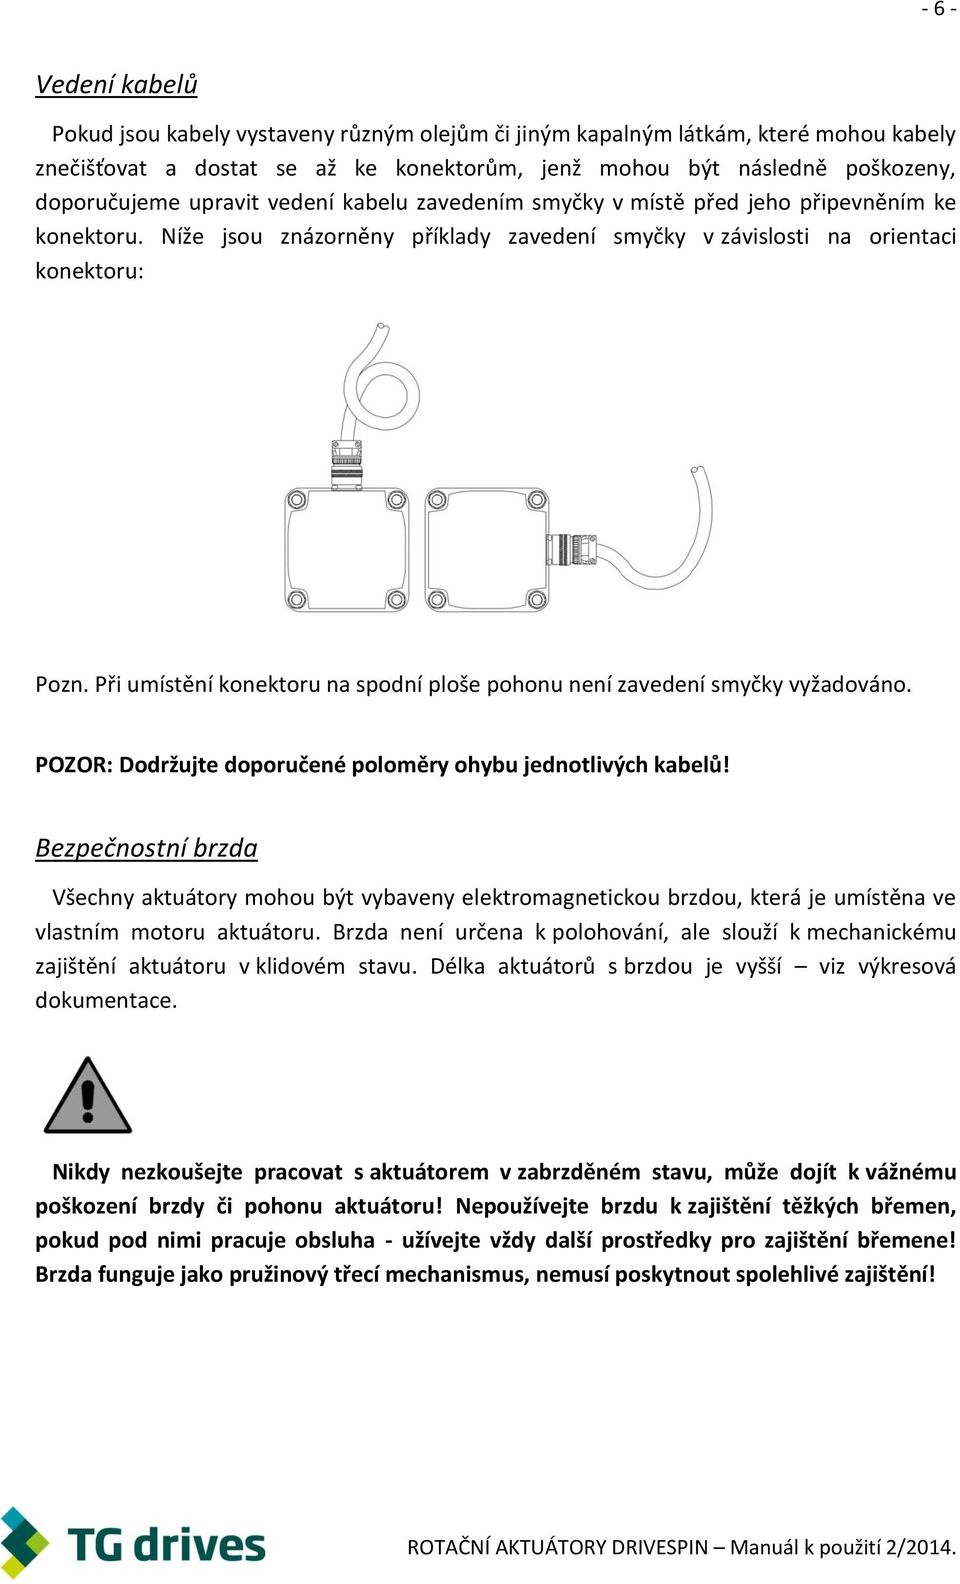 Při umístění konektoru na spodní ploše pohonu není zavedení smyčky vyžadováno. POZOR: Dodržujte doporučené poloměry ohybu jednotlivých kabelů!